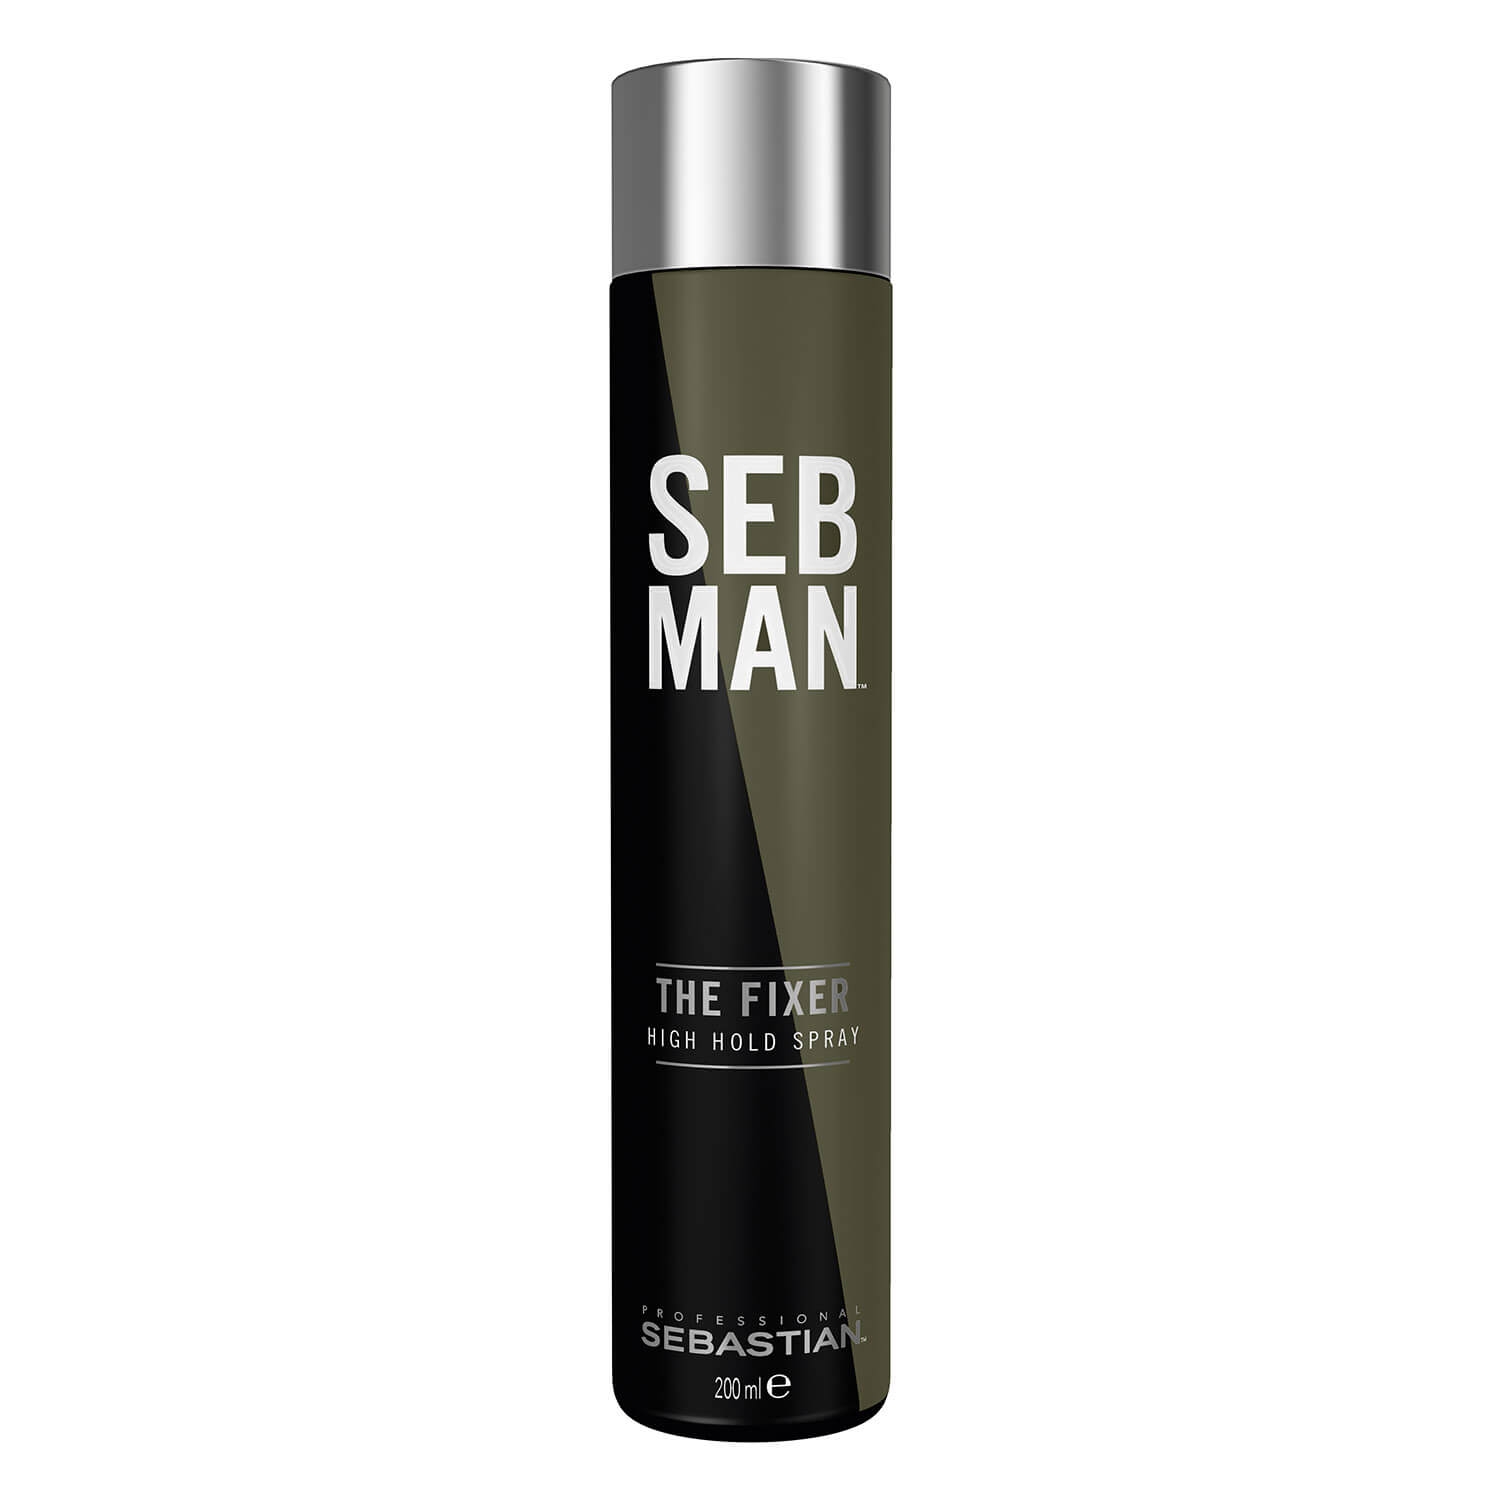 Produktbild von SEB MAN - The Fixer High Hold Spray